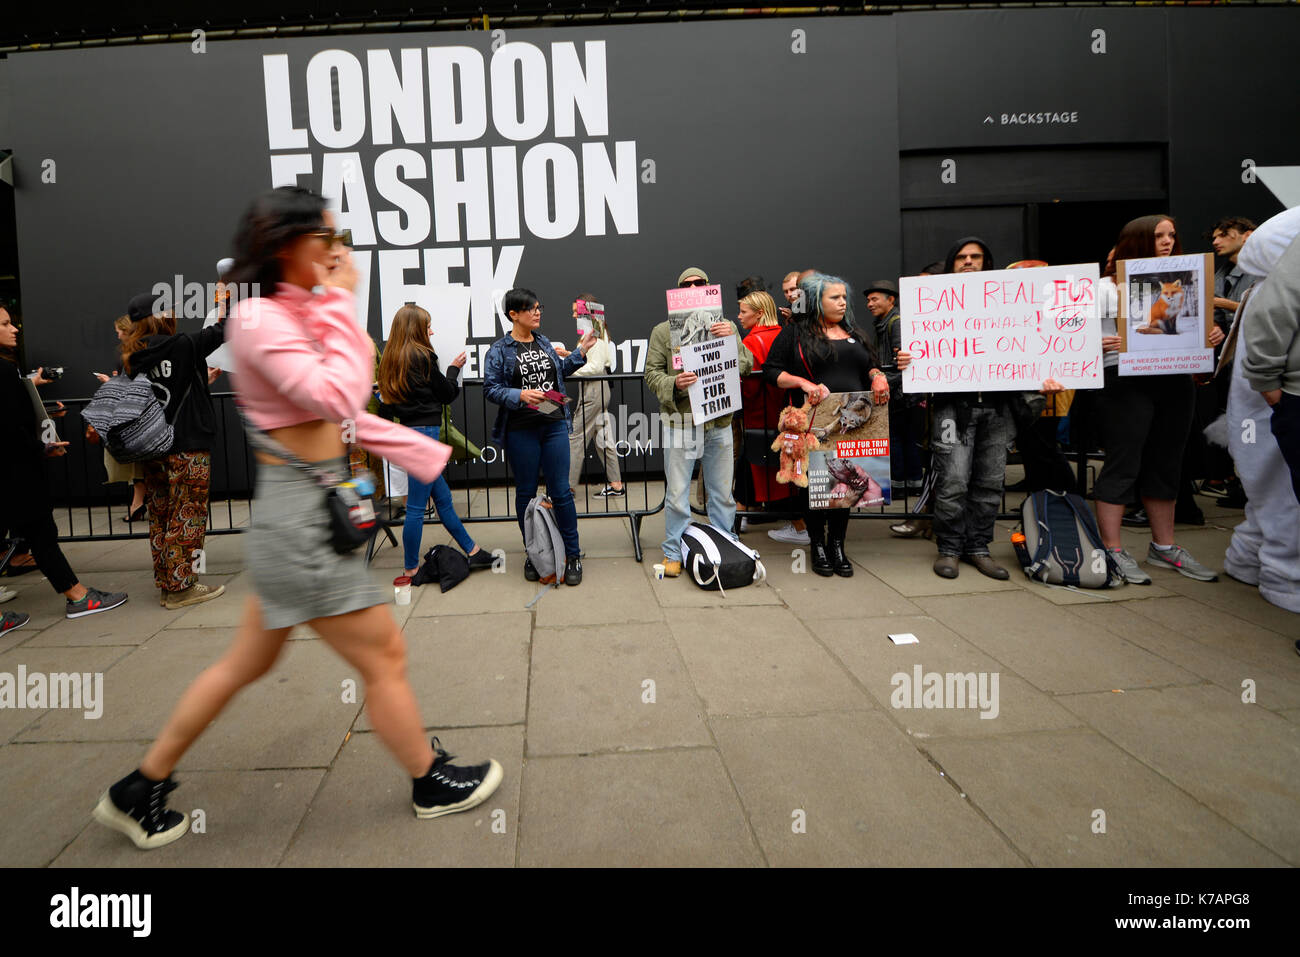 Manifestantes se reunieron fuera de la tienda Studios durante la Semana de la Moda de Londres para demostrar sus sentimientos sobre el uso de las pieles. Los derechos de los animales protestan Foto de stock